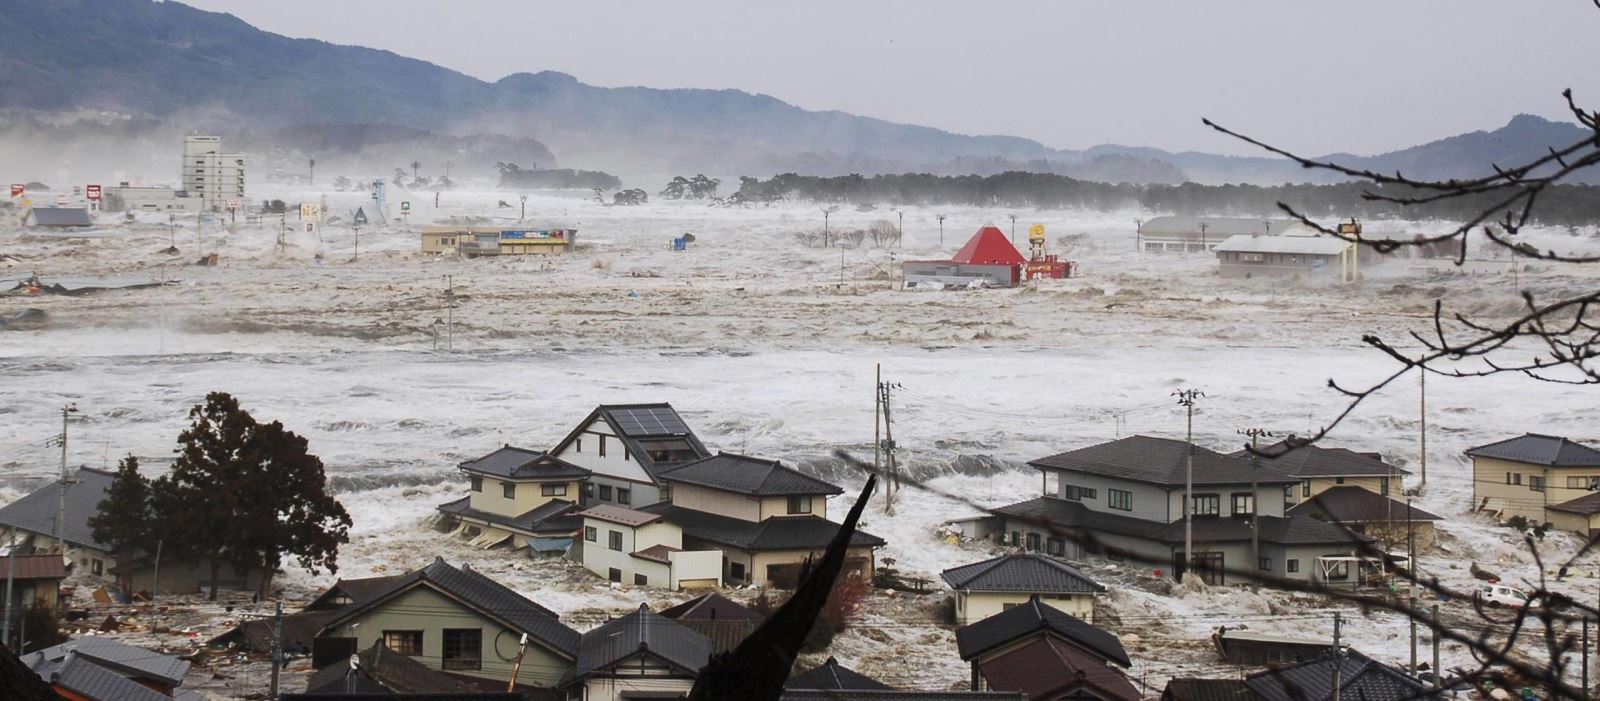 Một cá nhân tặng 120 thỏi vàng hỗ trợ sau động đất sóng thần ở Nhật Bản - Ảnh 1.